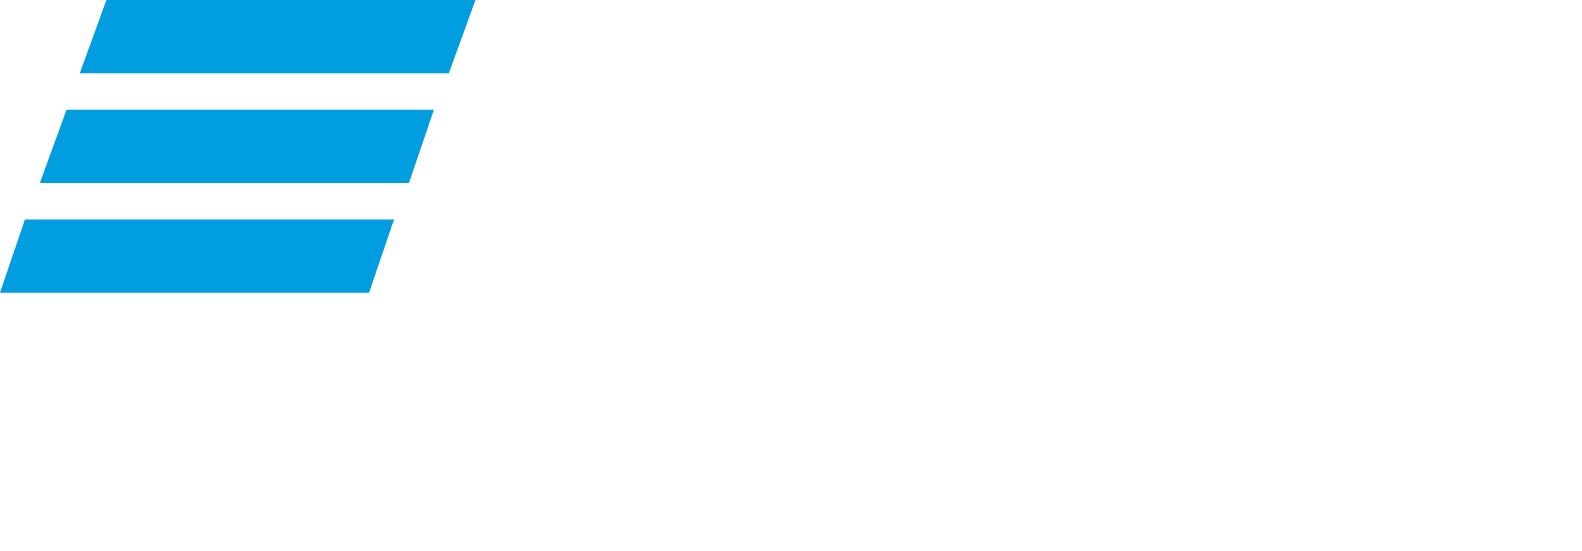 VTB Bank logo large for dark backgrounds (transparent PNG)